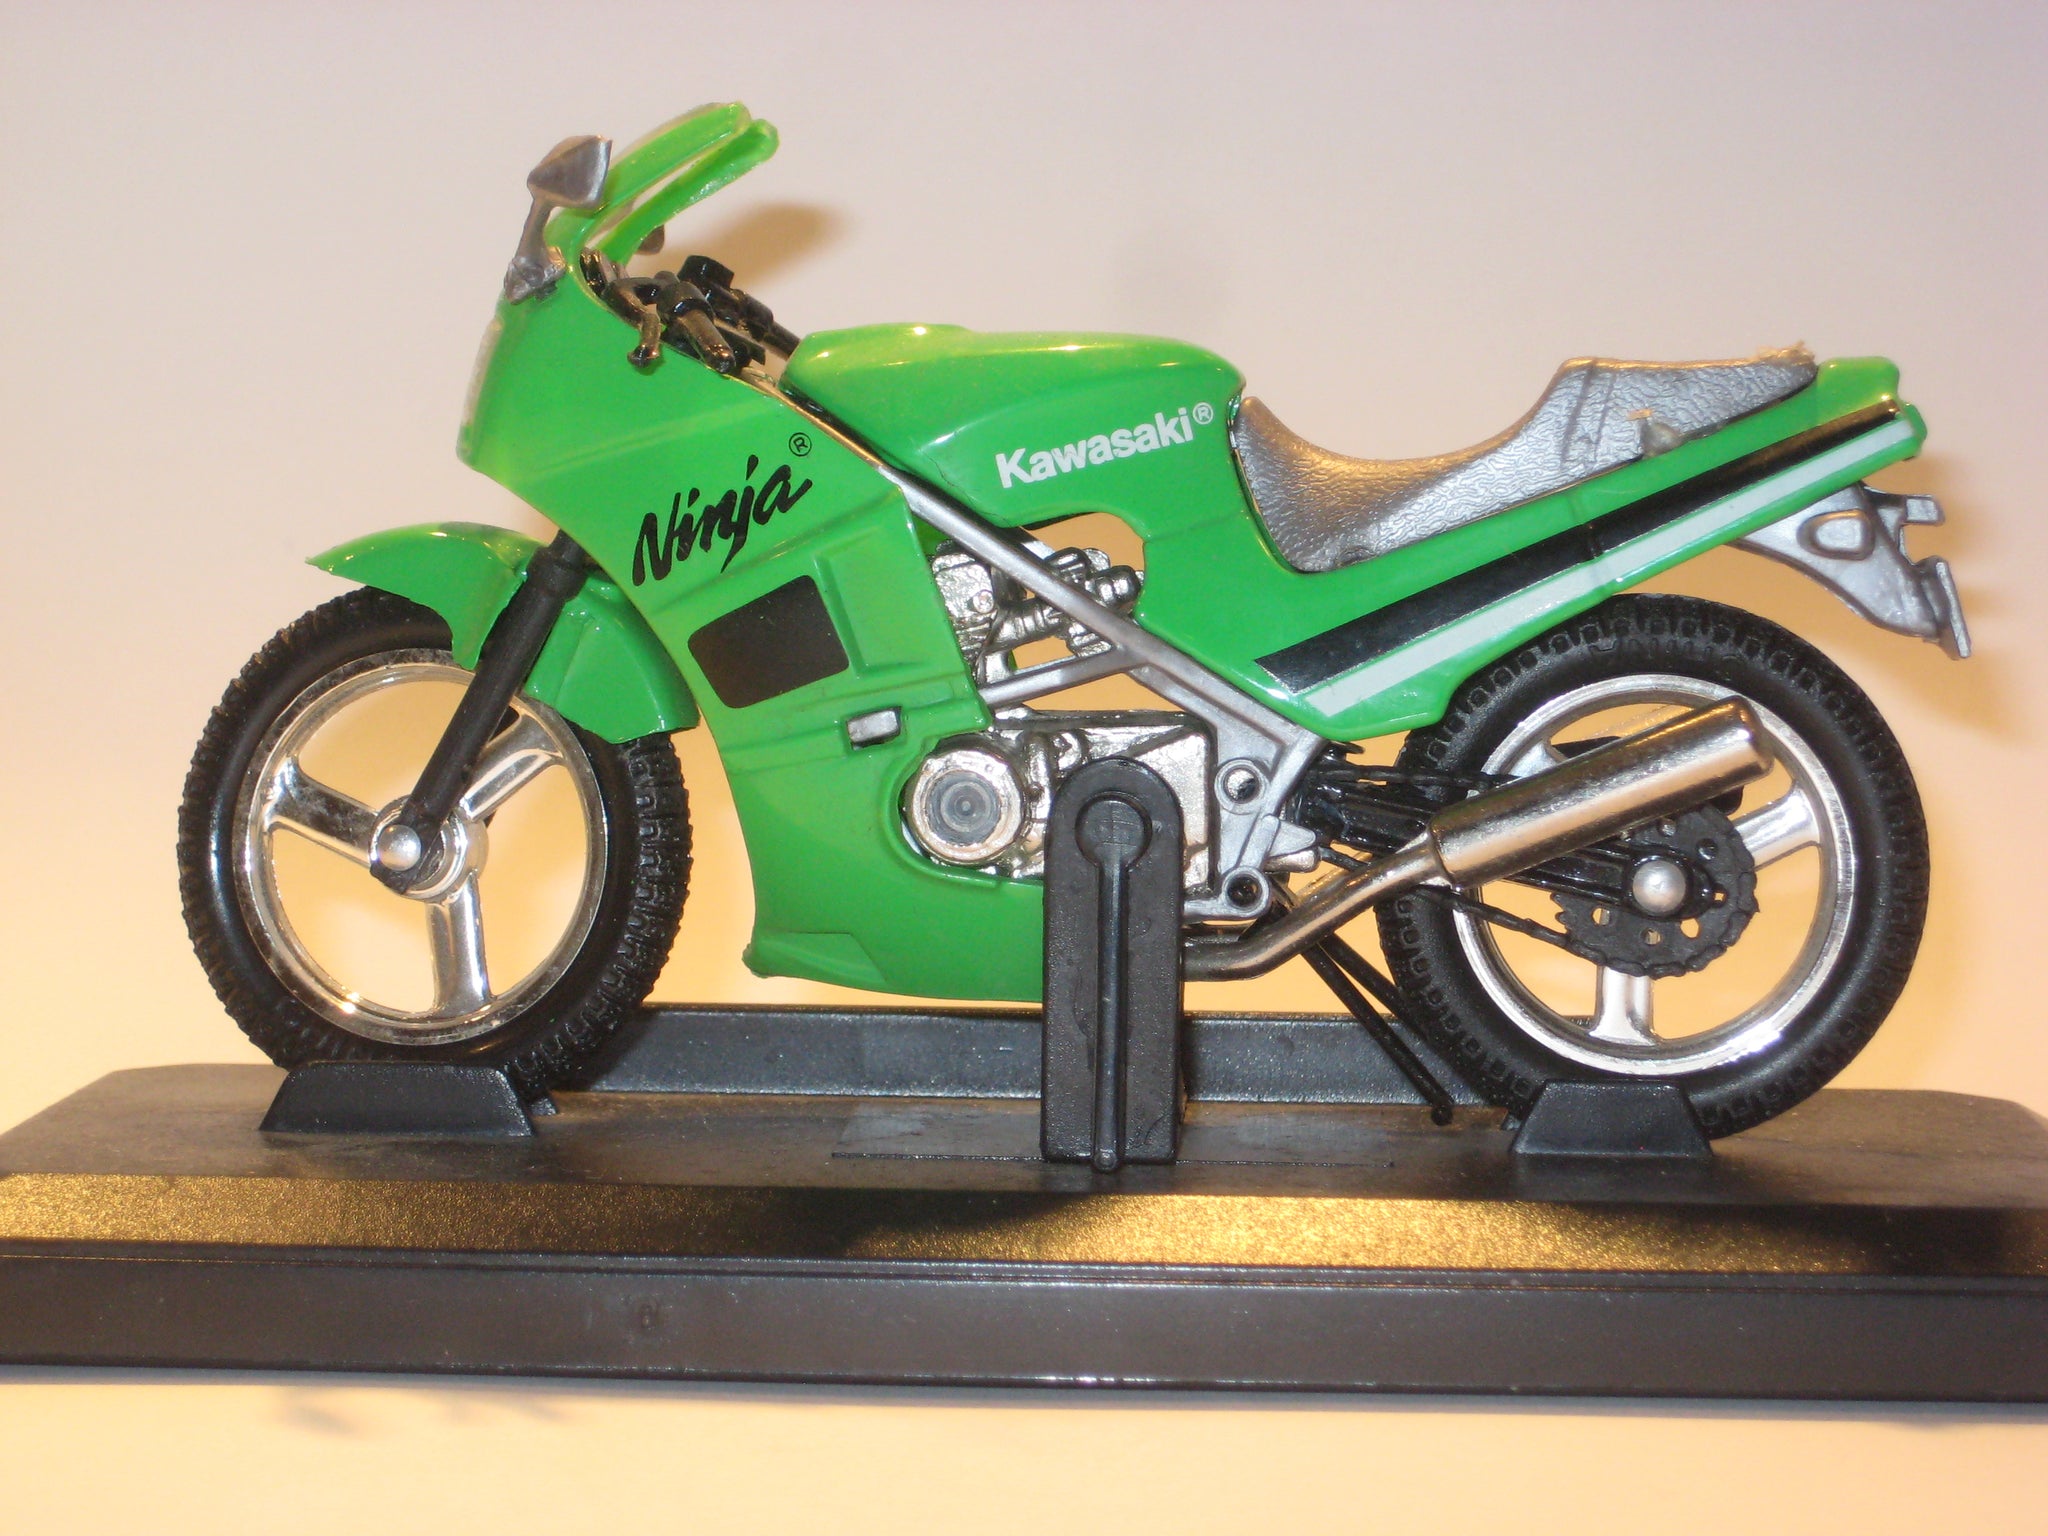 Kawasaki Ninja. Welly 1:18 modelmotorcykler.dk